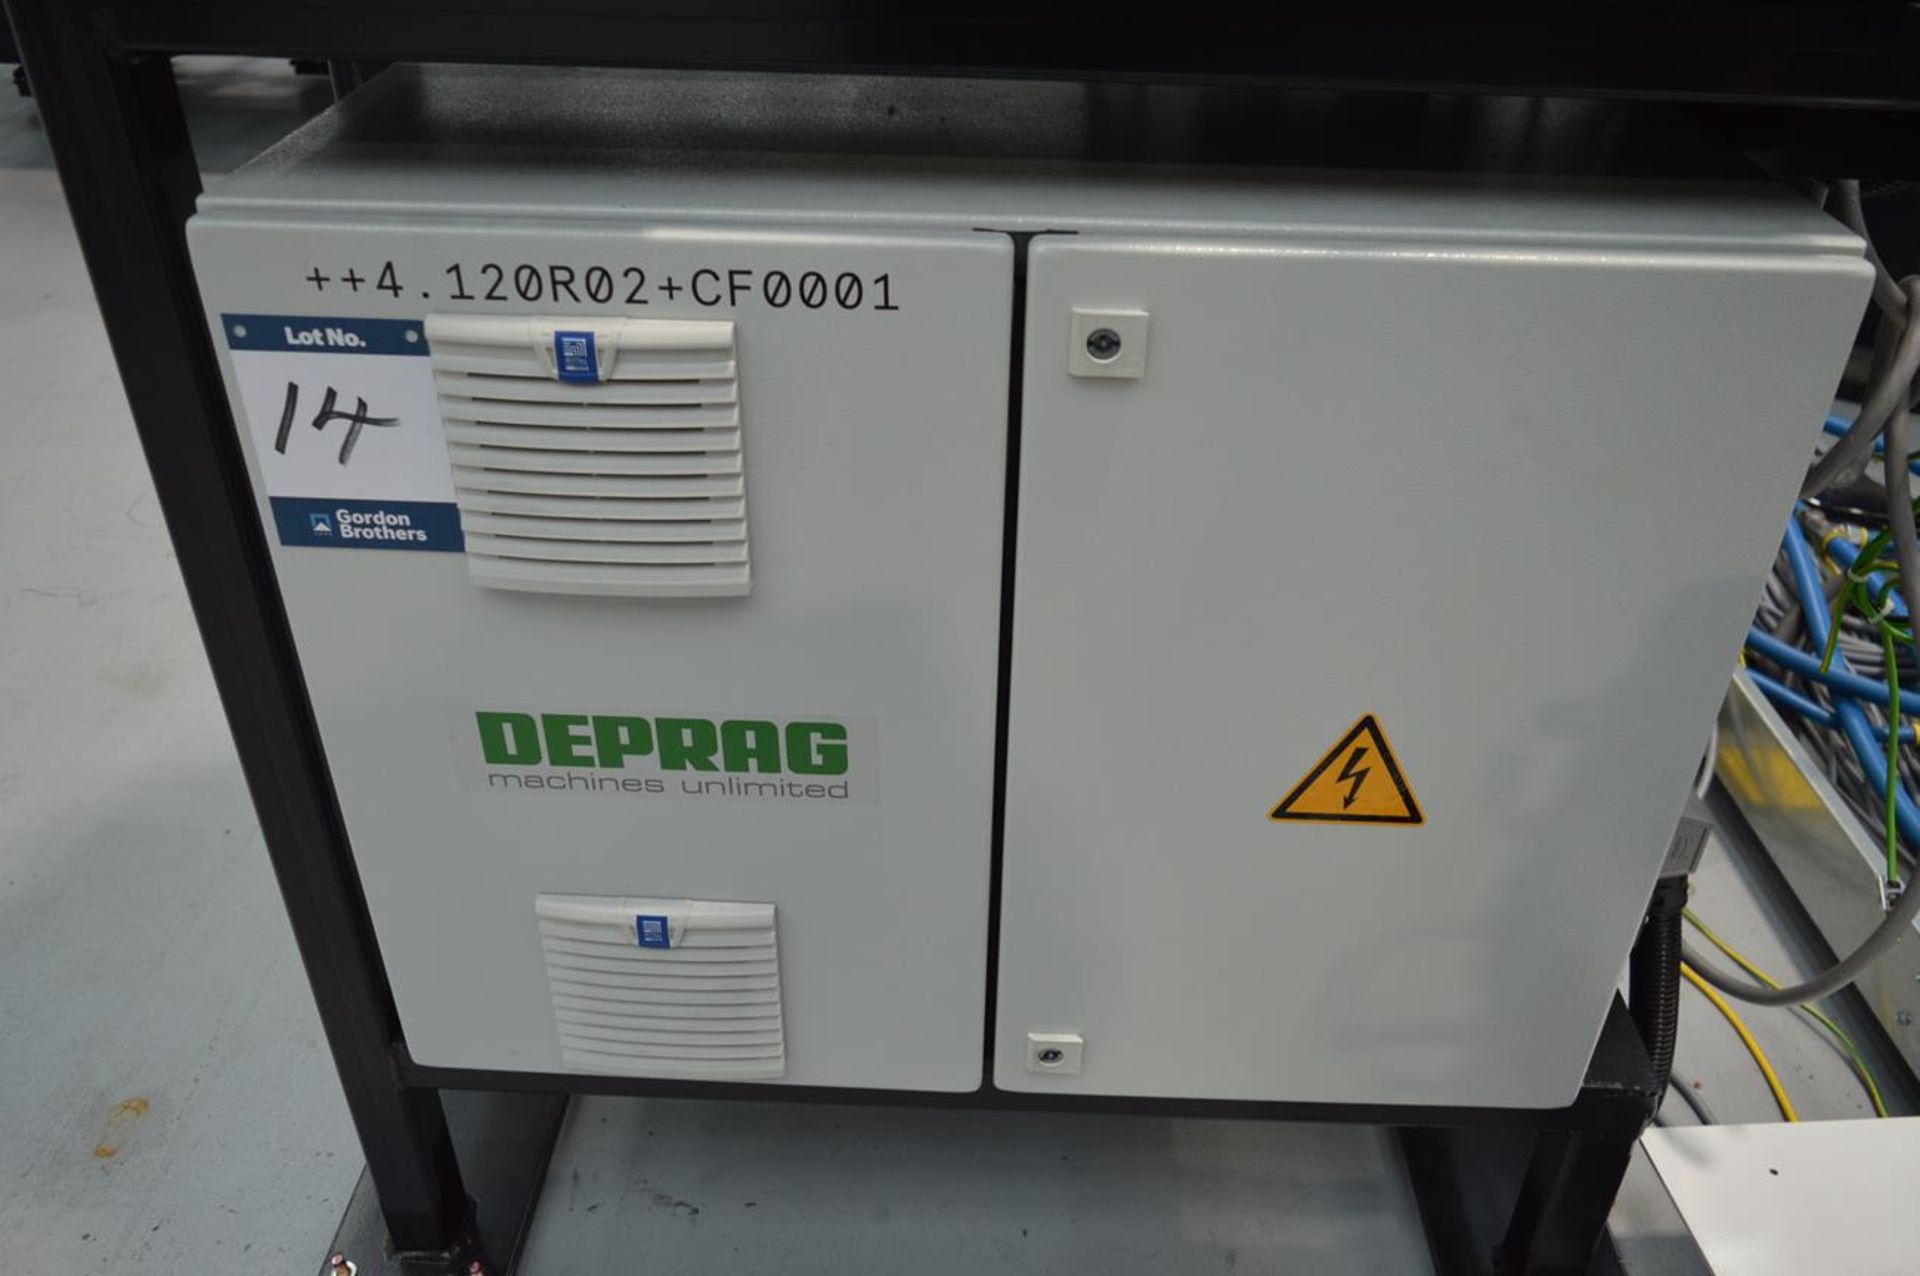 Deprag, ADFS-2-1508-1 Flowform adaptive DFS controller, Serial No. 1393271/21 including freeform